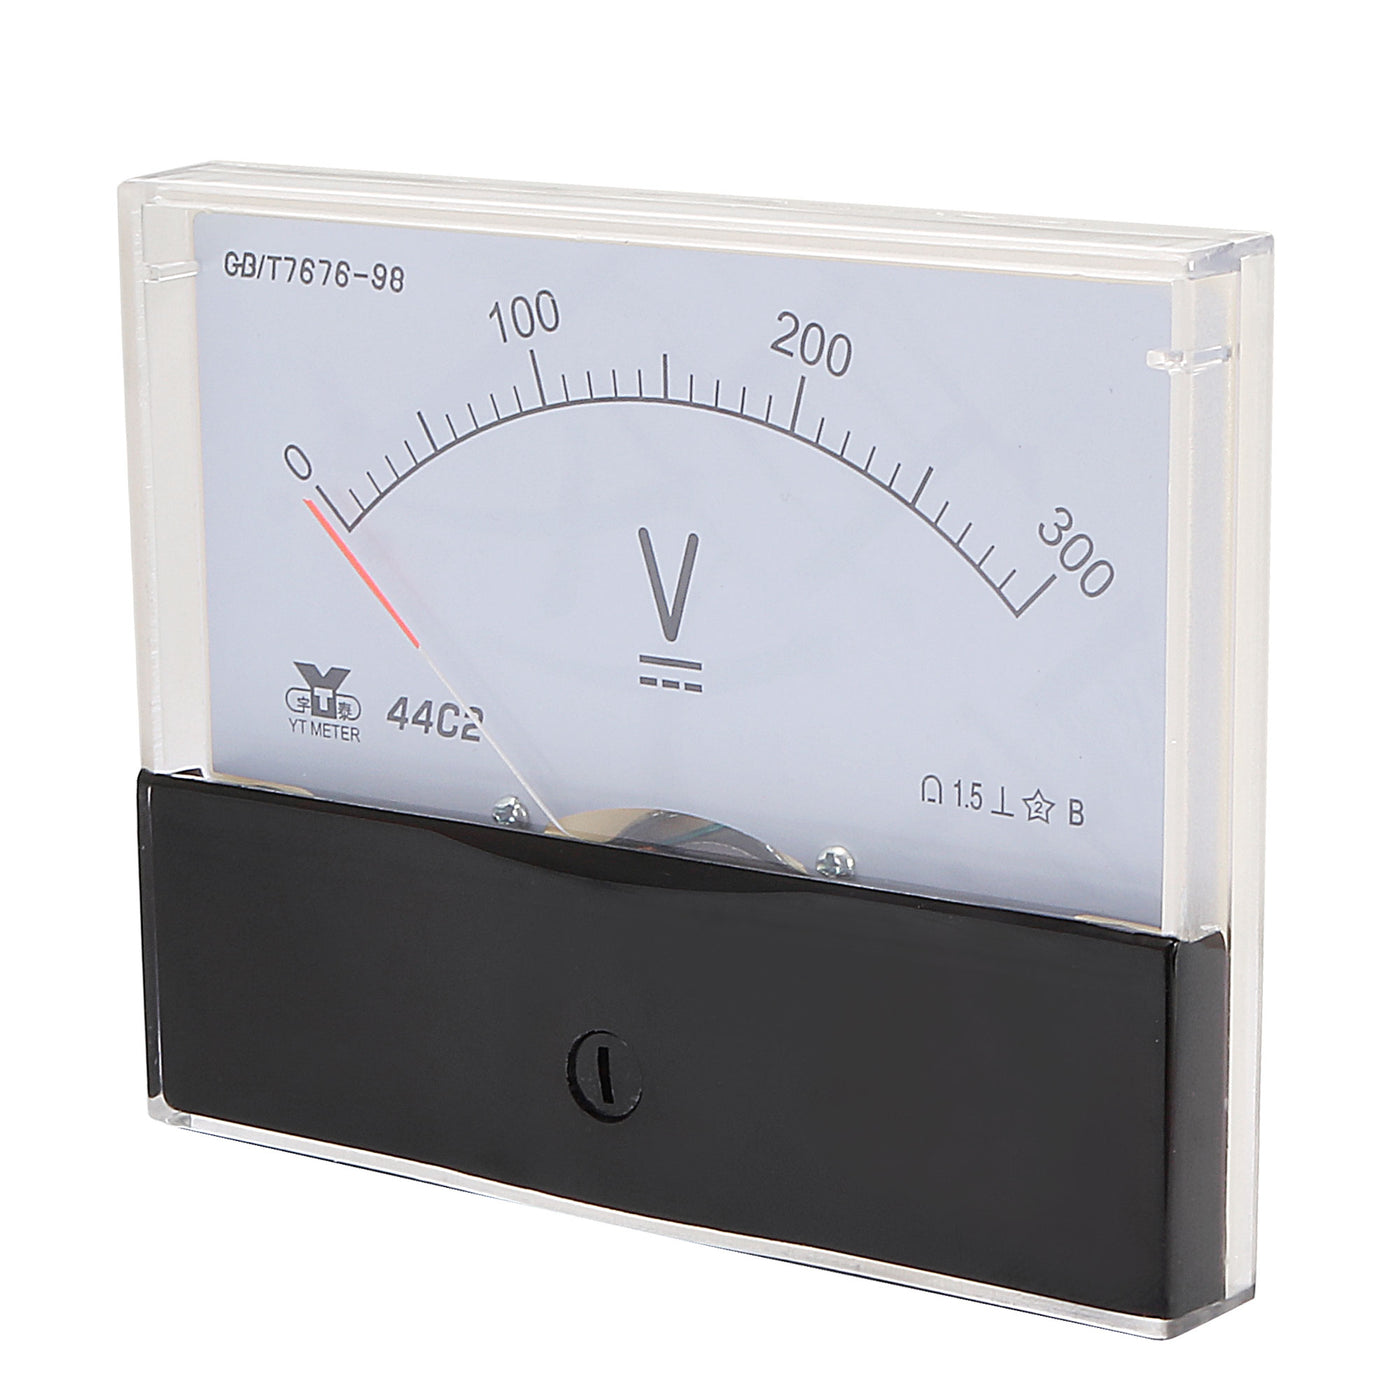 uxcell Uxcell Rectangle Measurement Tool Analog Panel Voltmeter Volt Meter DC 0 - 300V Measuring Range 44C2